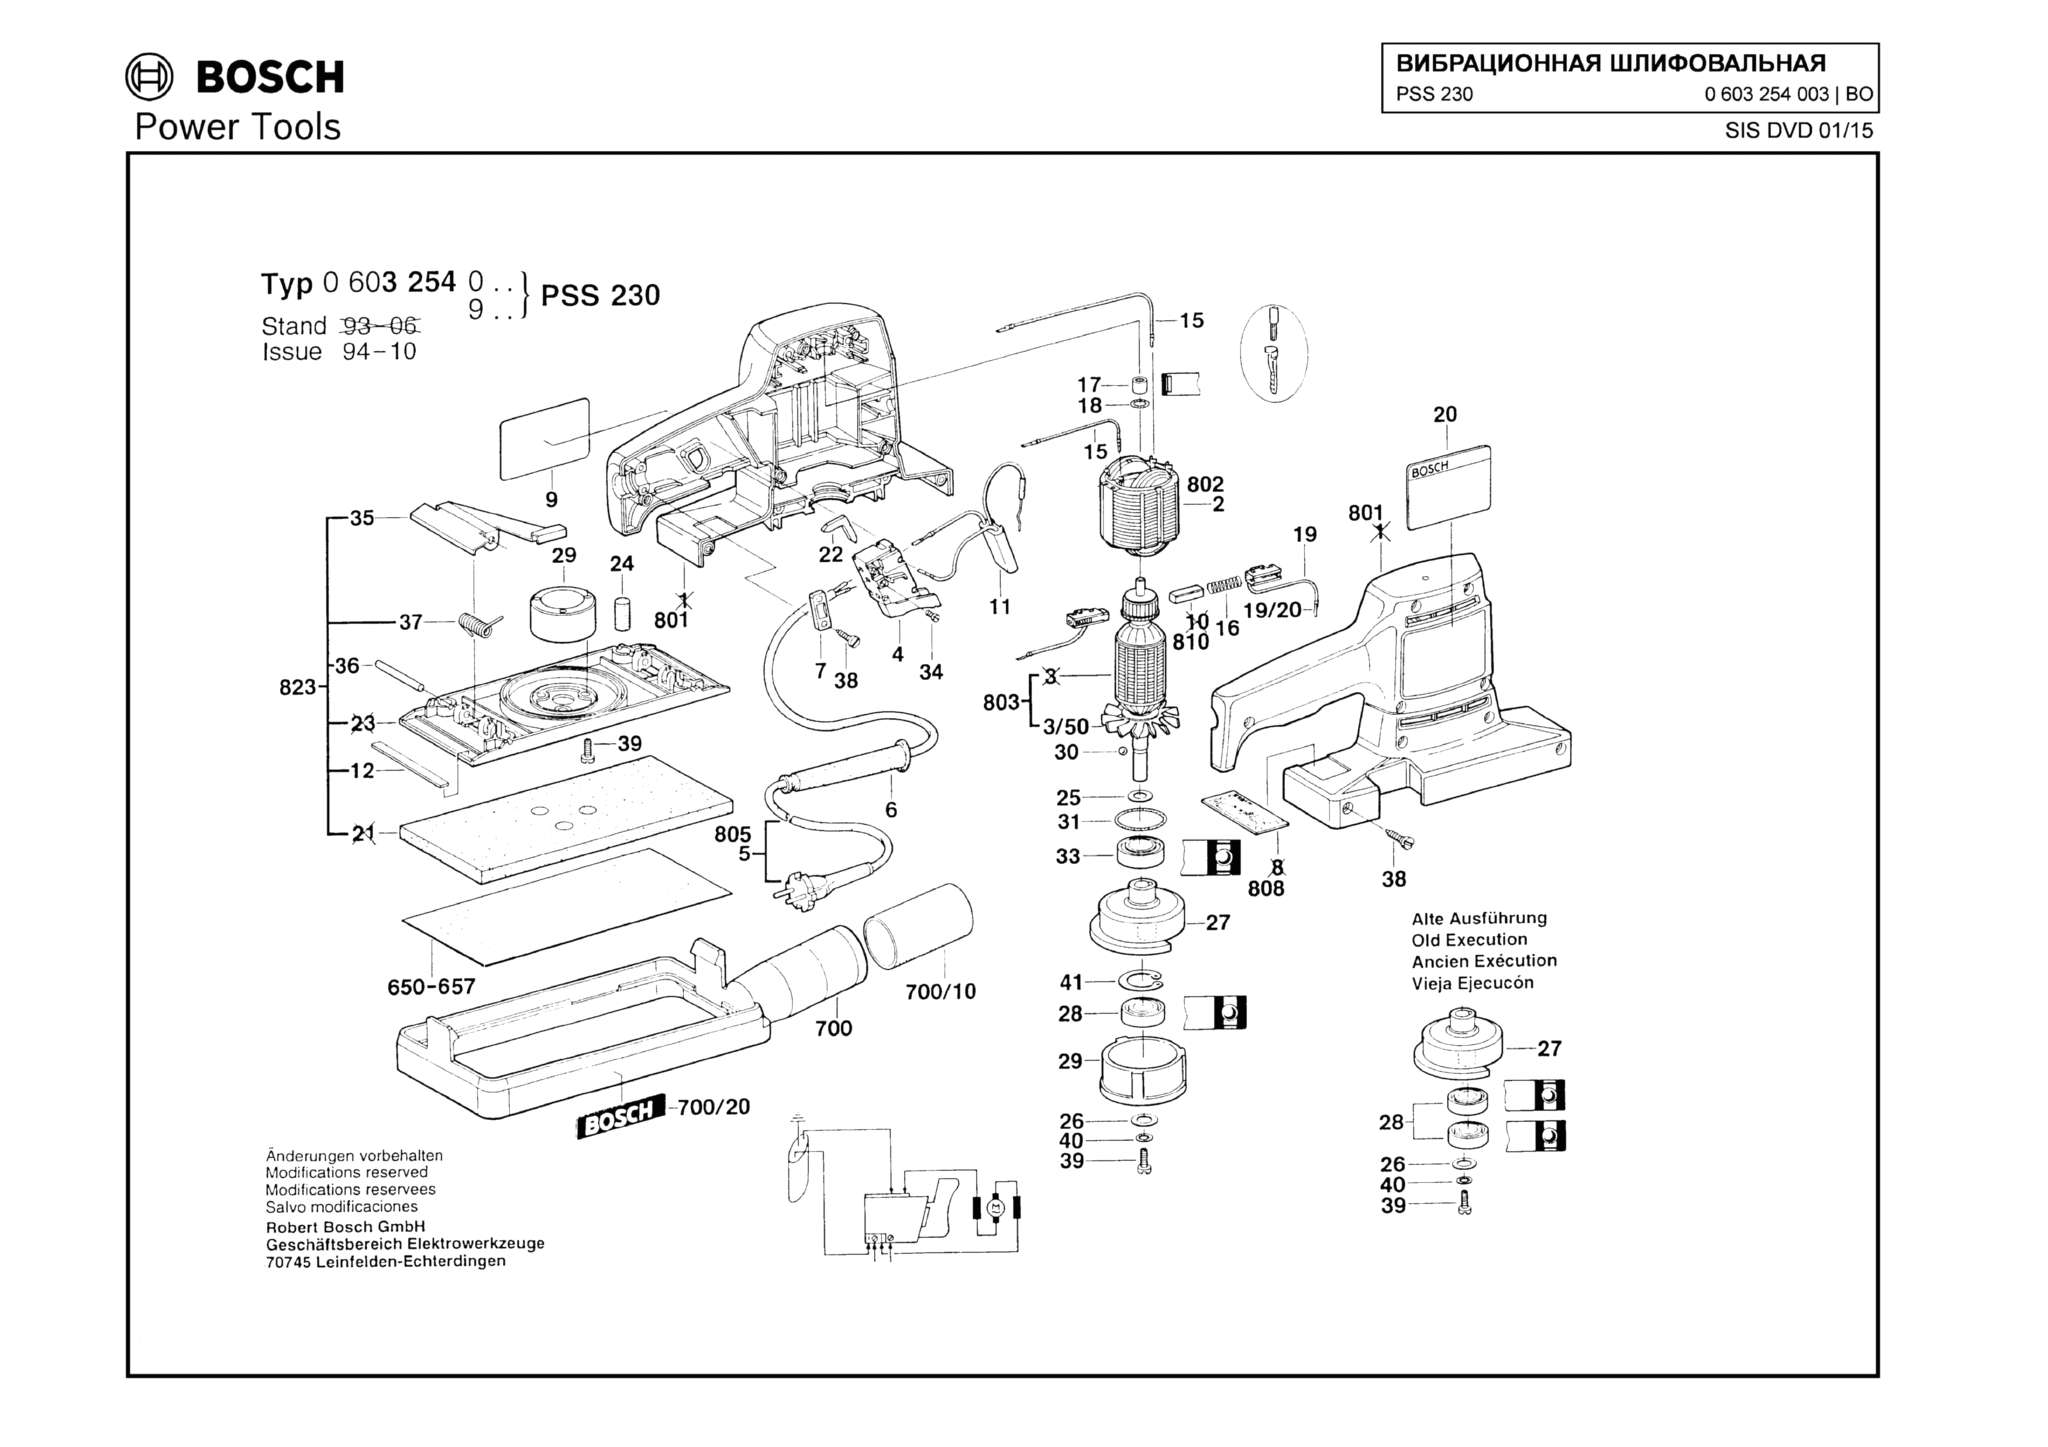 Запчасти, схема и деталировка Bosch PSS 230 (ТИП 0603254003)